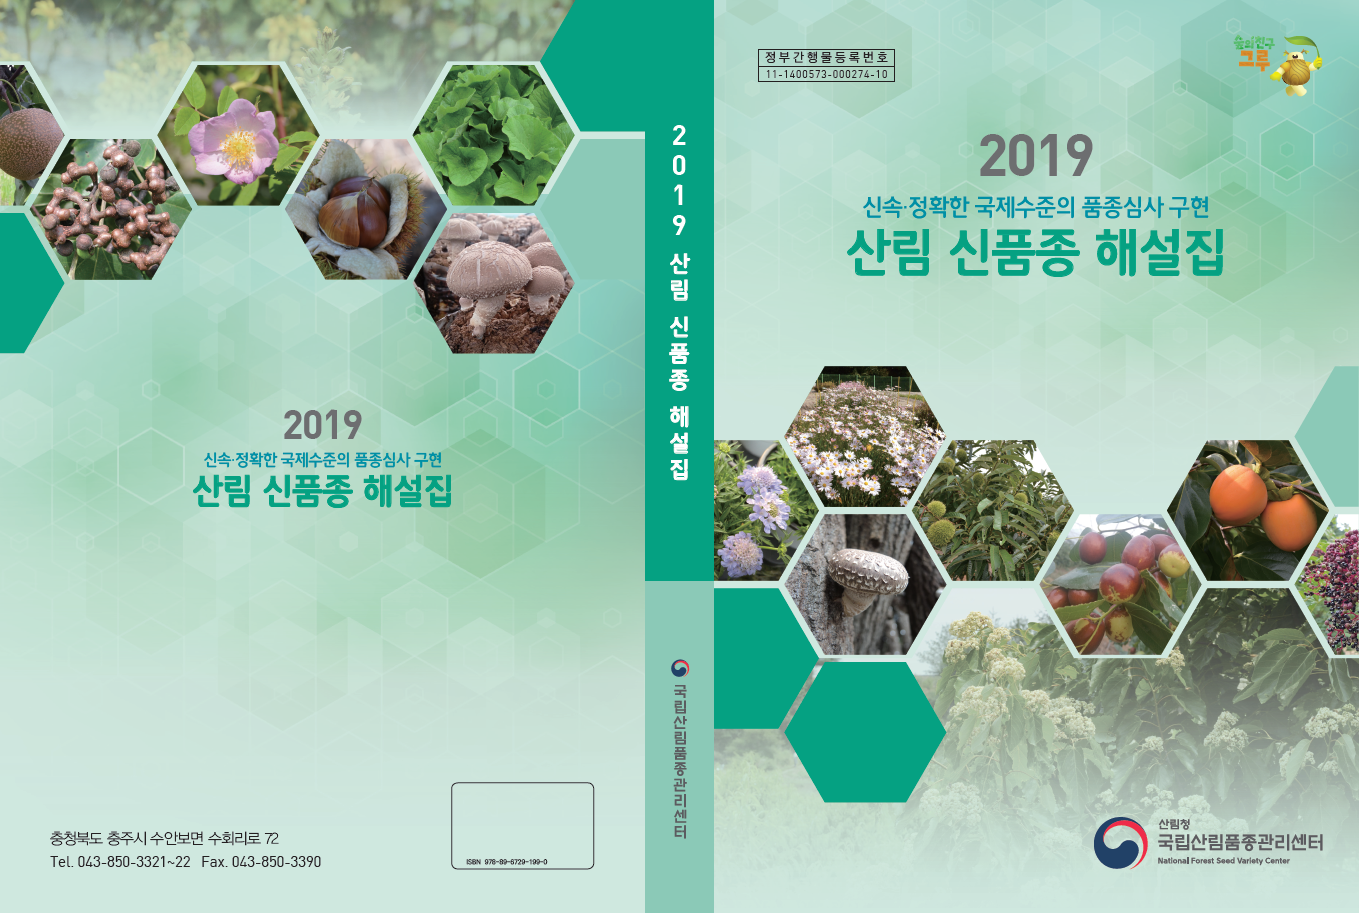 2019년에 새로 등록된 산림 신품종을 소개합니다.